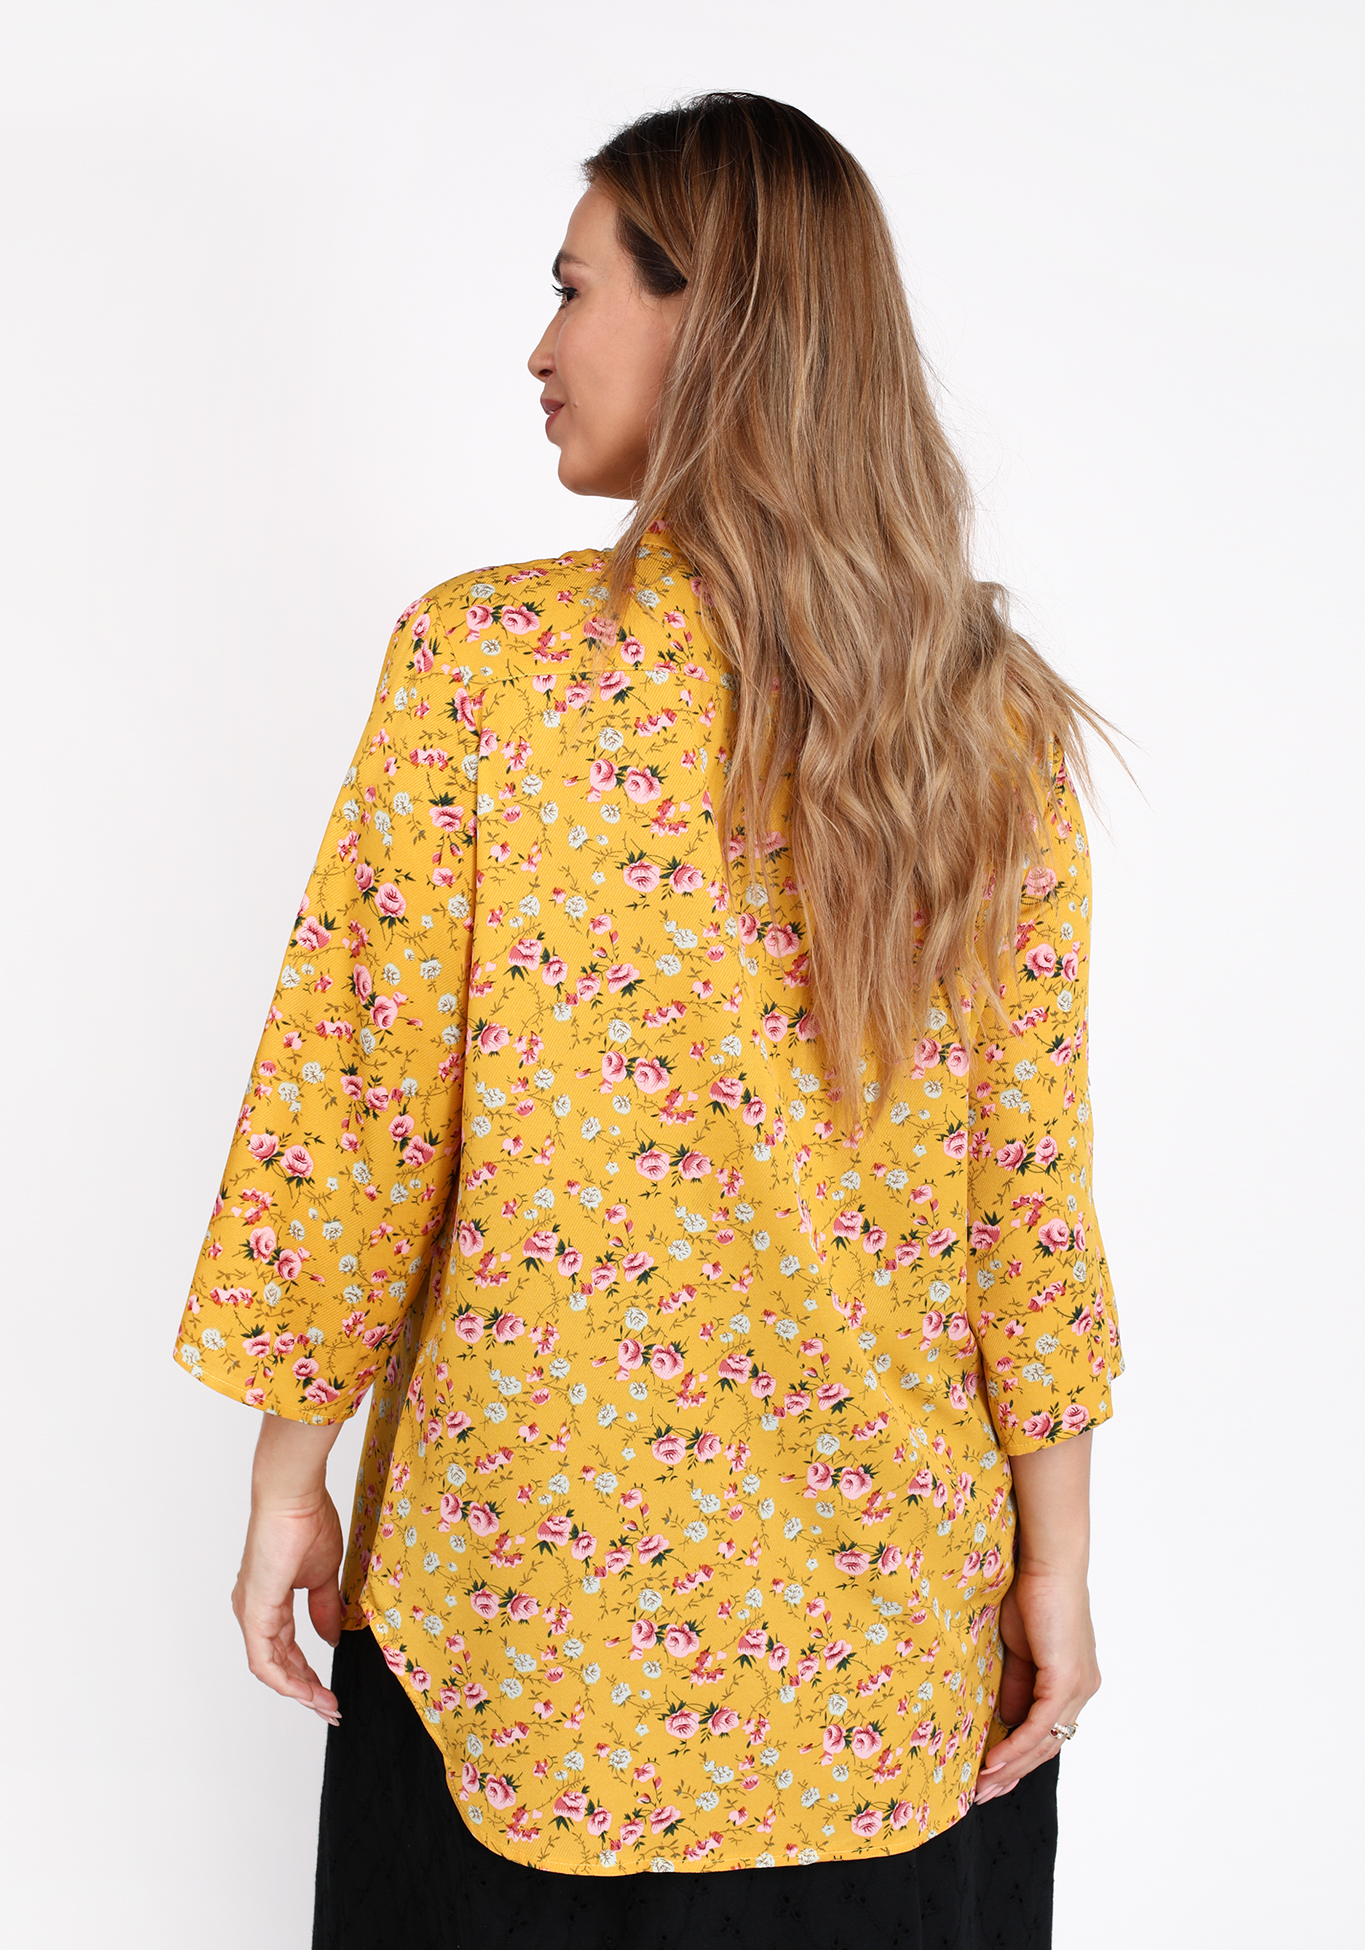 Рубашка на пуговицах с цветочным принтом Bianka Modeno, размер 50 свободная модель - фото 3